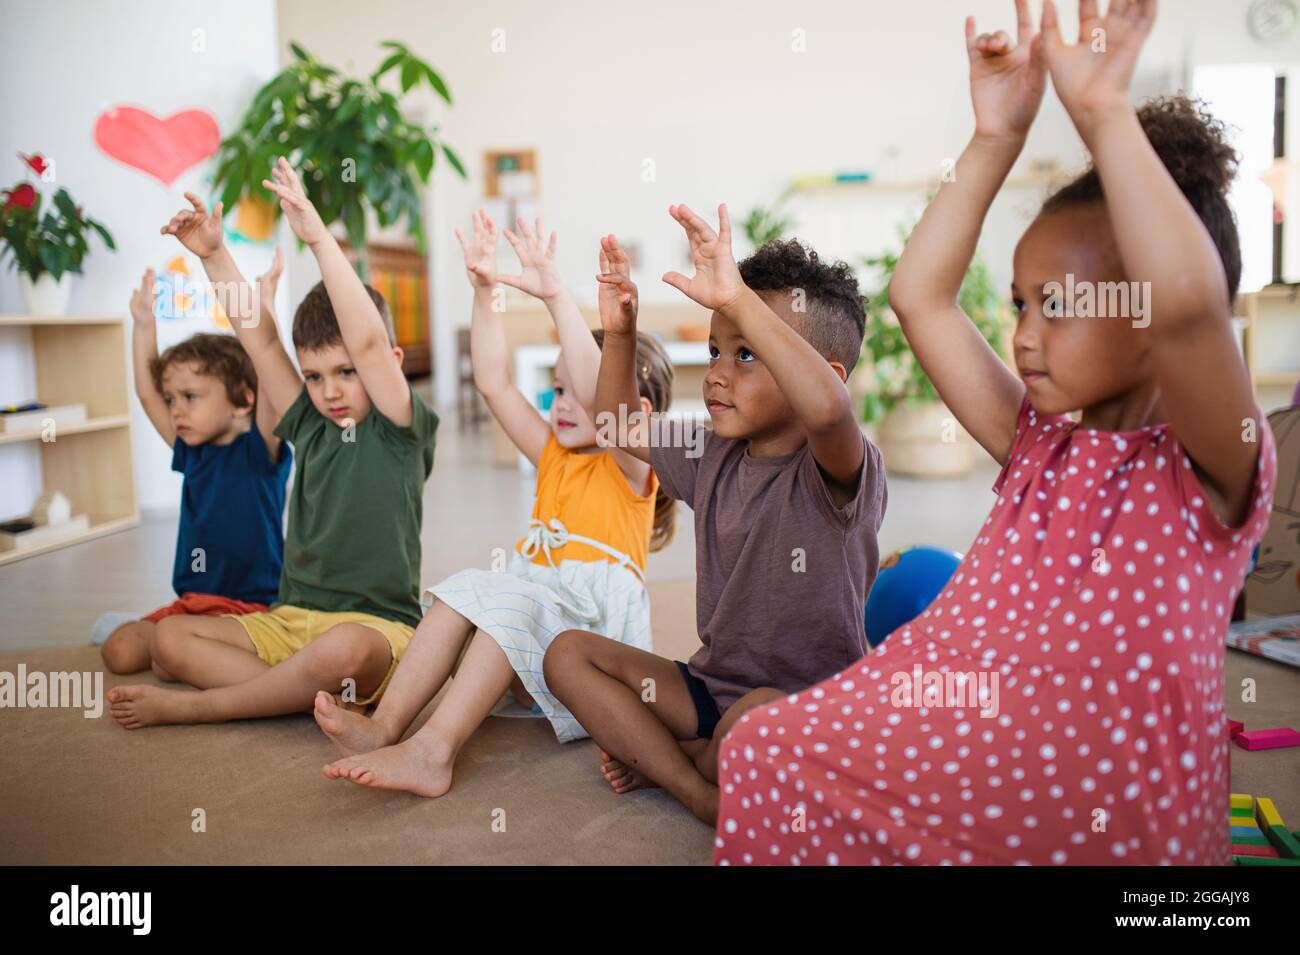 Gruppe von kleinen Kindergartenkindern, die im Klassenzimmer auf dem Boden sitzen und spielen. Stockfoto